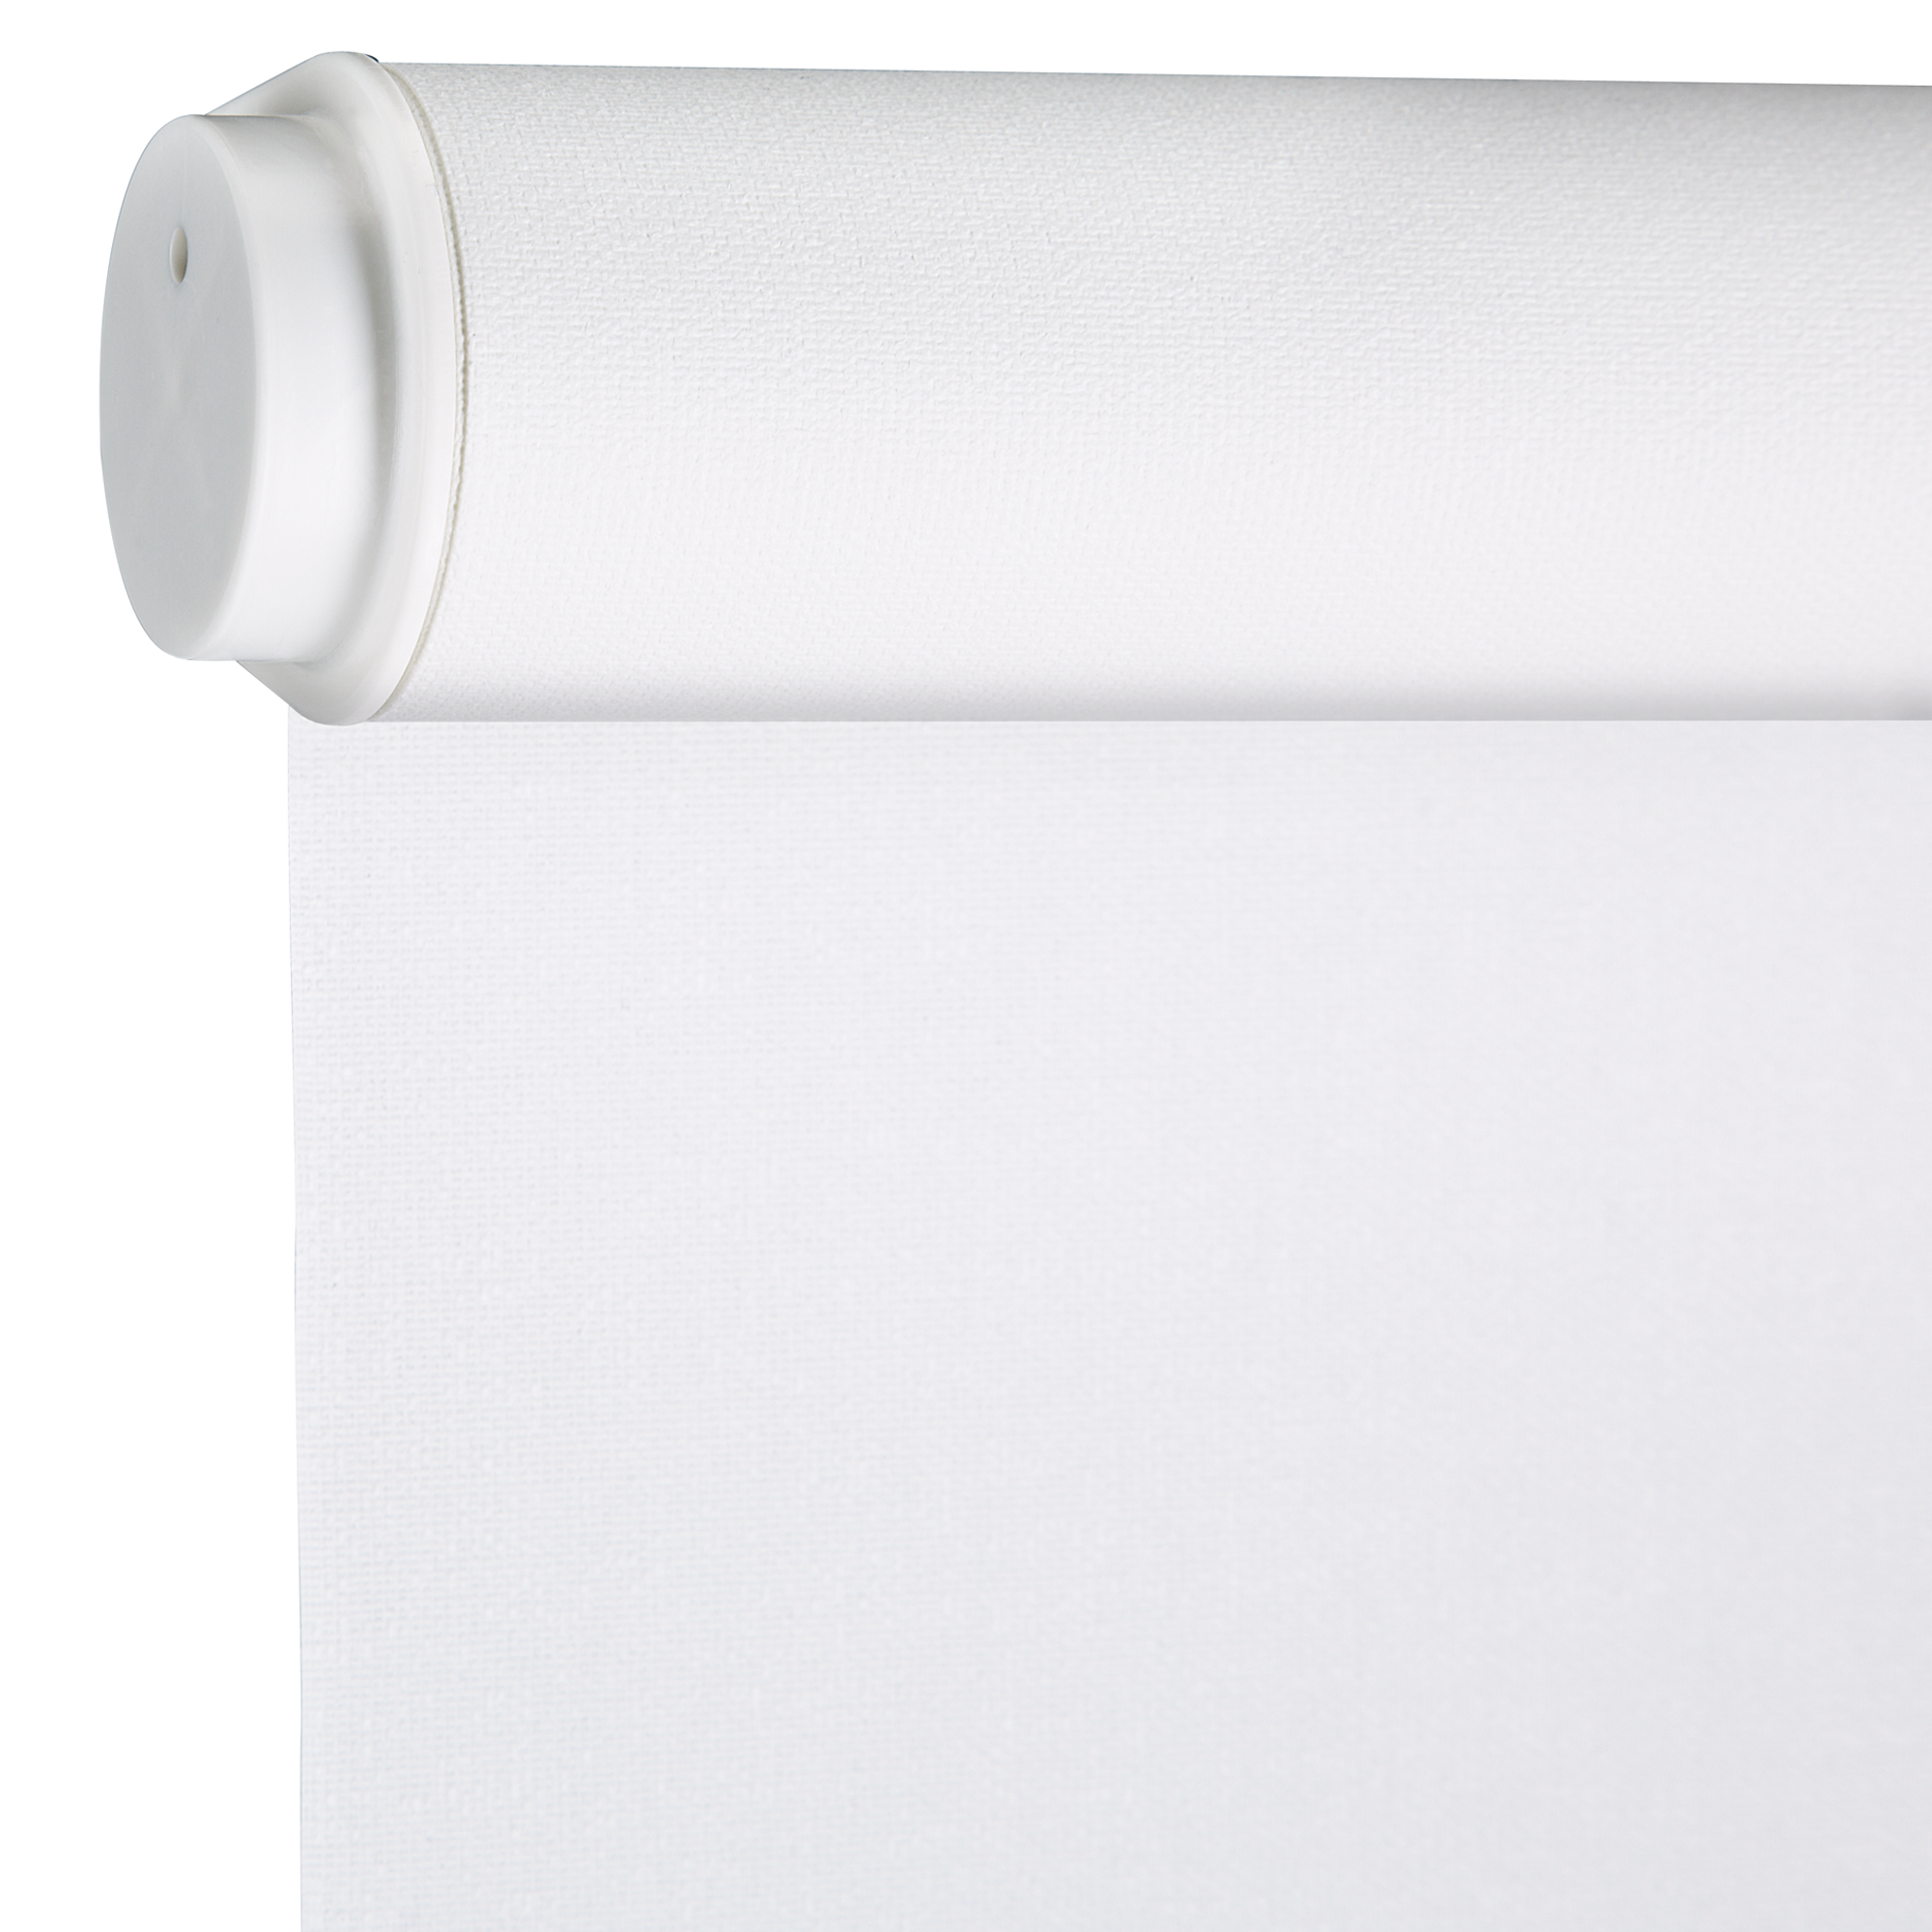 Seitenzug-Rollo 'Lichtdurchlässig' weiß 122 x 180 cm + product picture